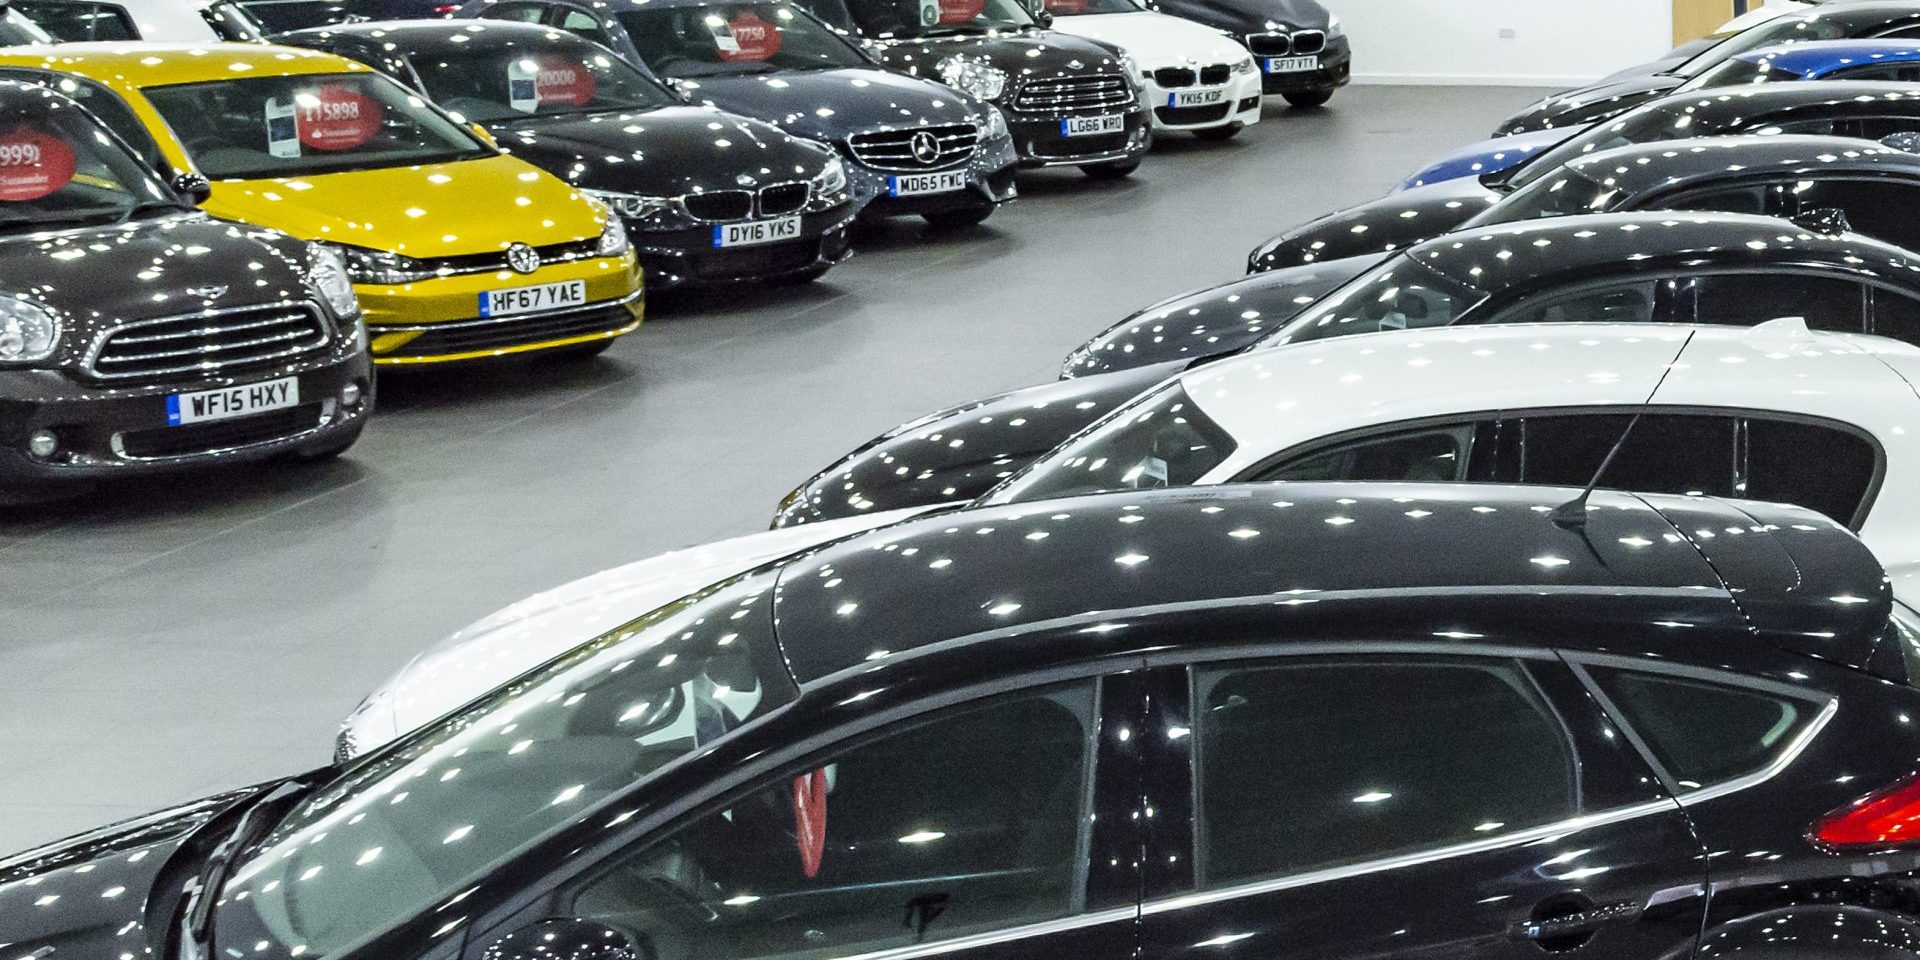 Top 15 Used Car Bargains Under £15k Revealed